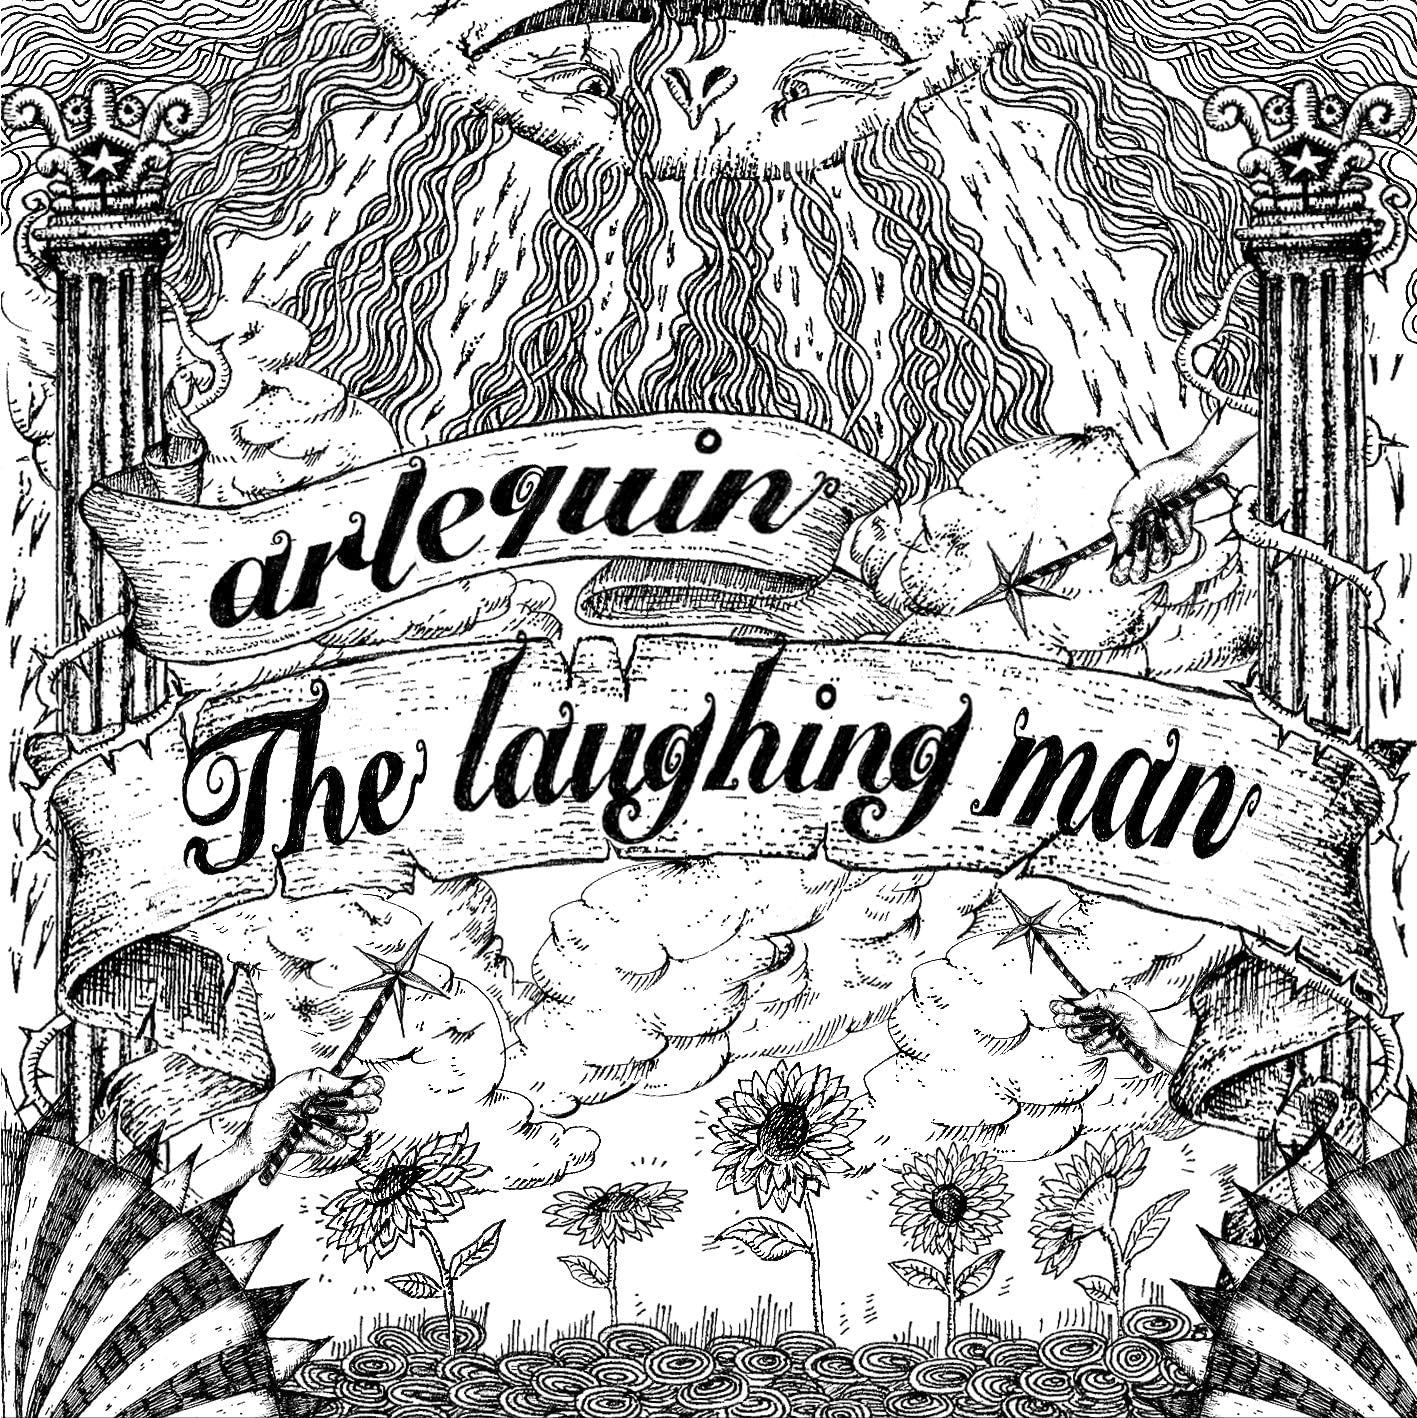 アルルカン/The laughing man